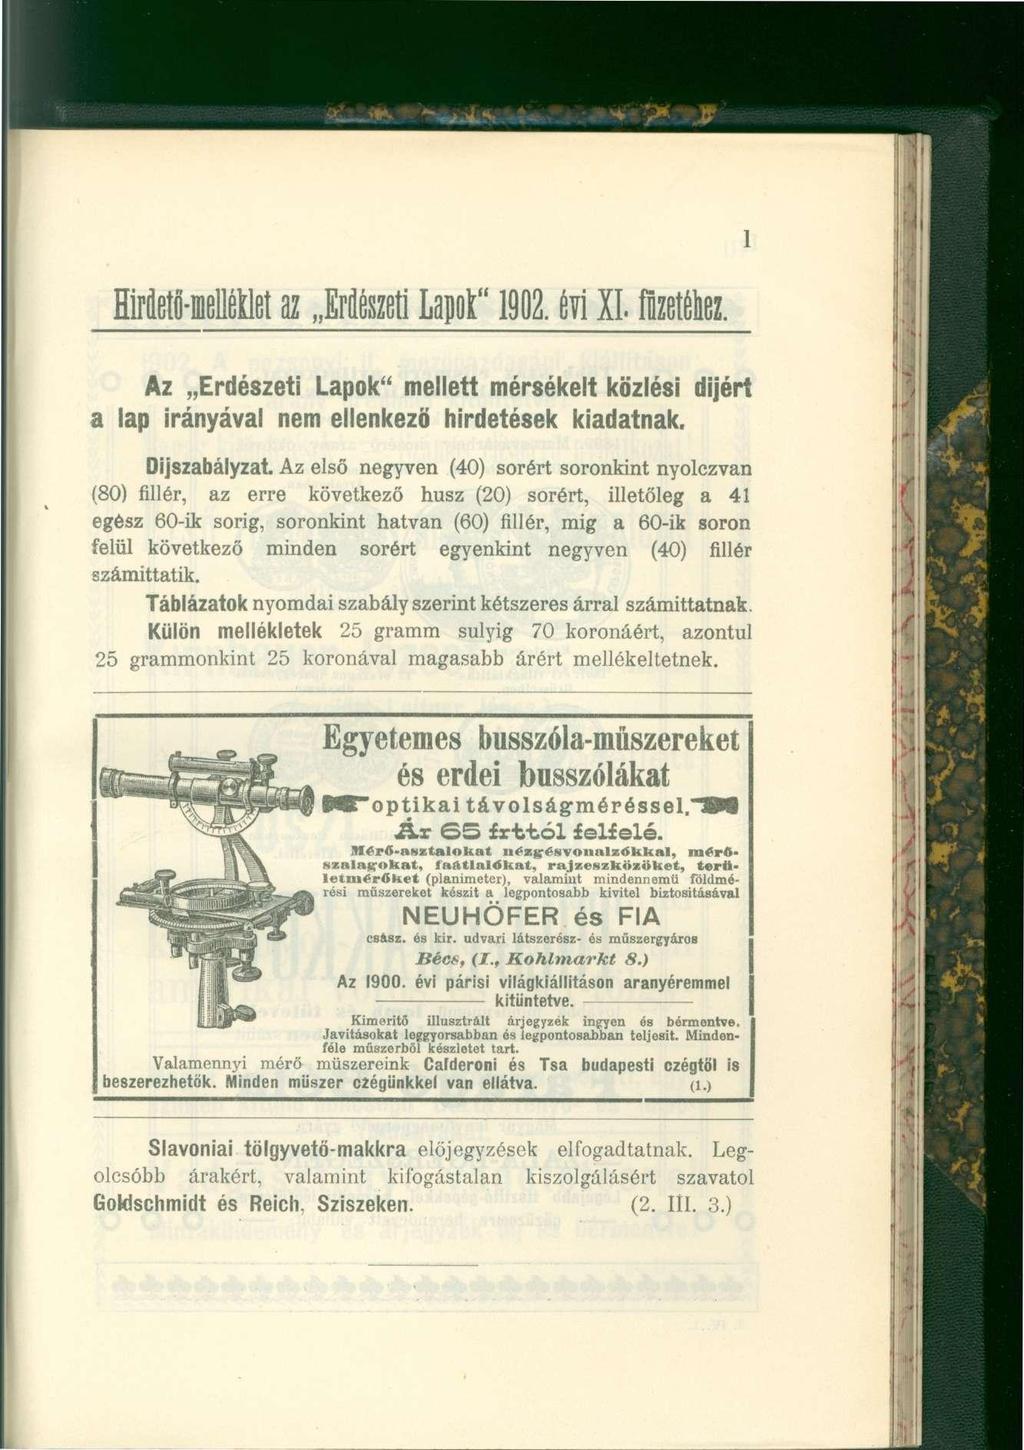 1 Hirdetö-mellétlet az Erdészeti lapot" 1902. évi XI. füzetéhez. Az Erdészeti Lapok" mellett mérsékelt közlési díjért a lap irányával nem ellenkező hirdetések kiadatnak. Díjszabályzat.